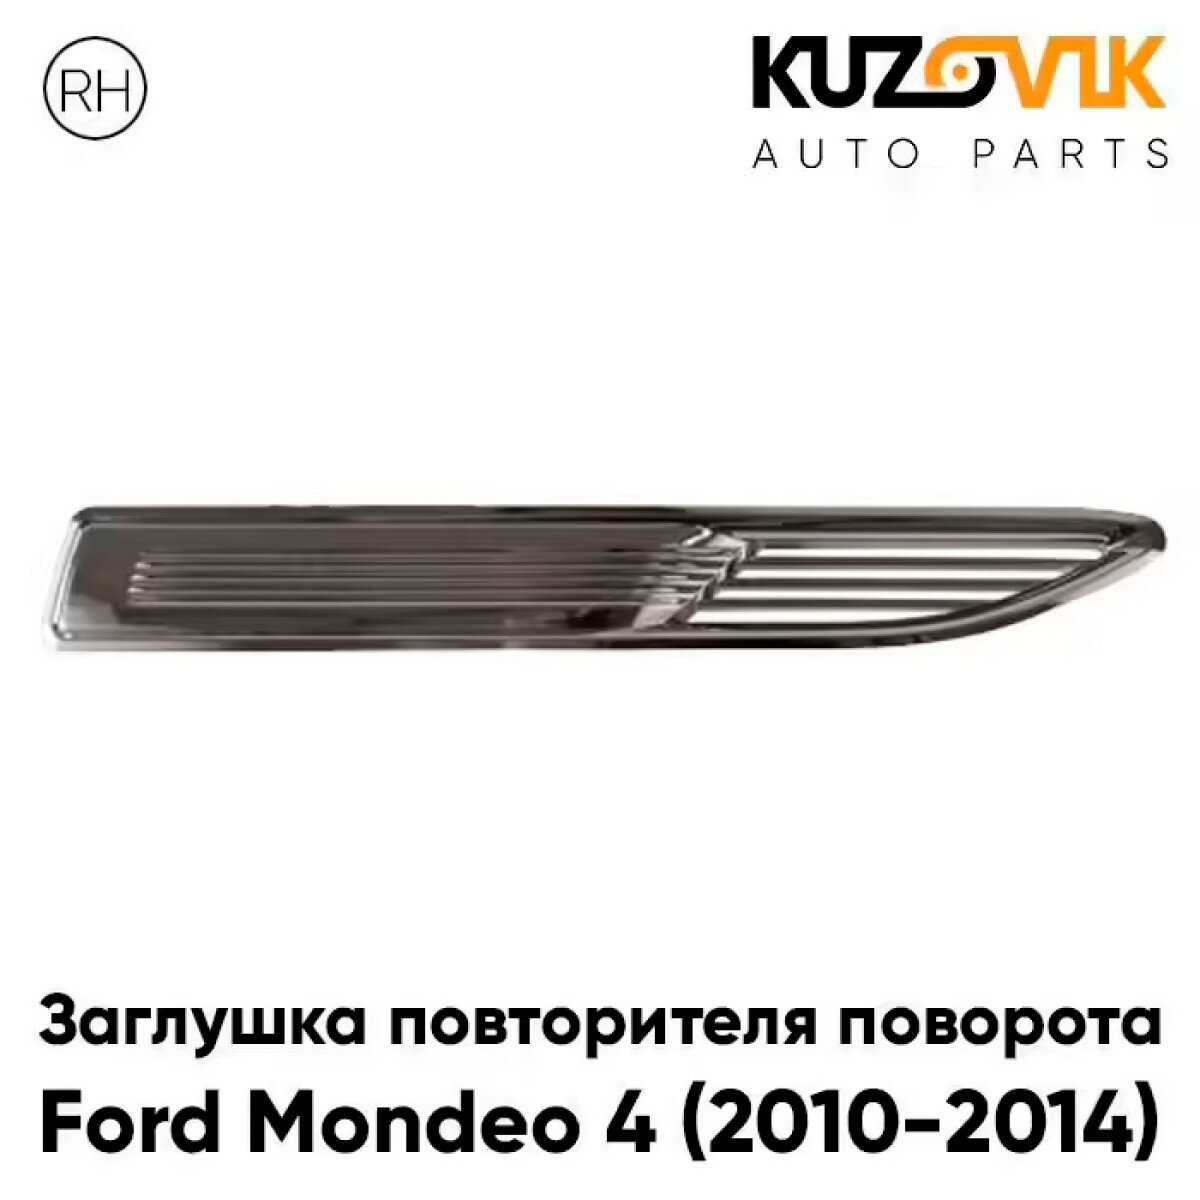 Заглушка повторителя поворота в крыло правая Ford Mondeo 4 (2010-2014) рестайлинг